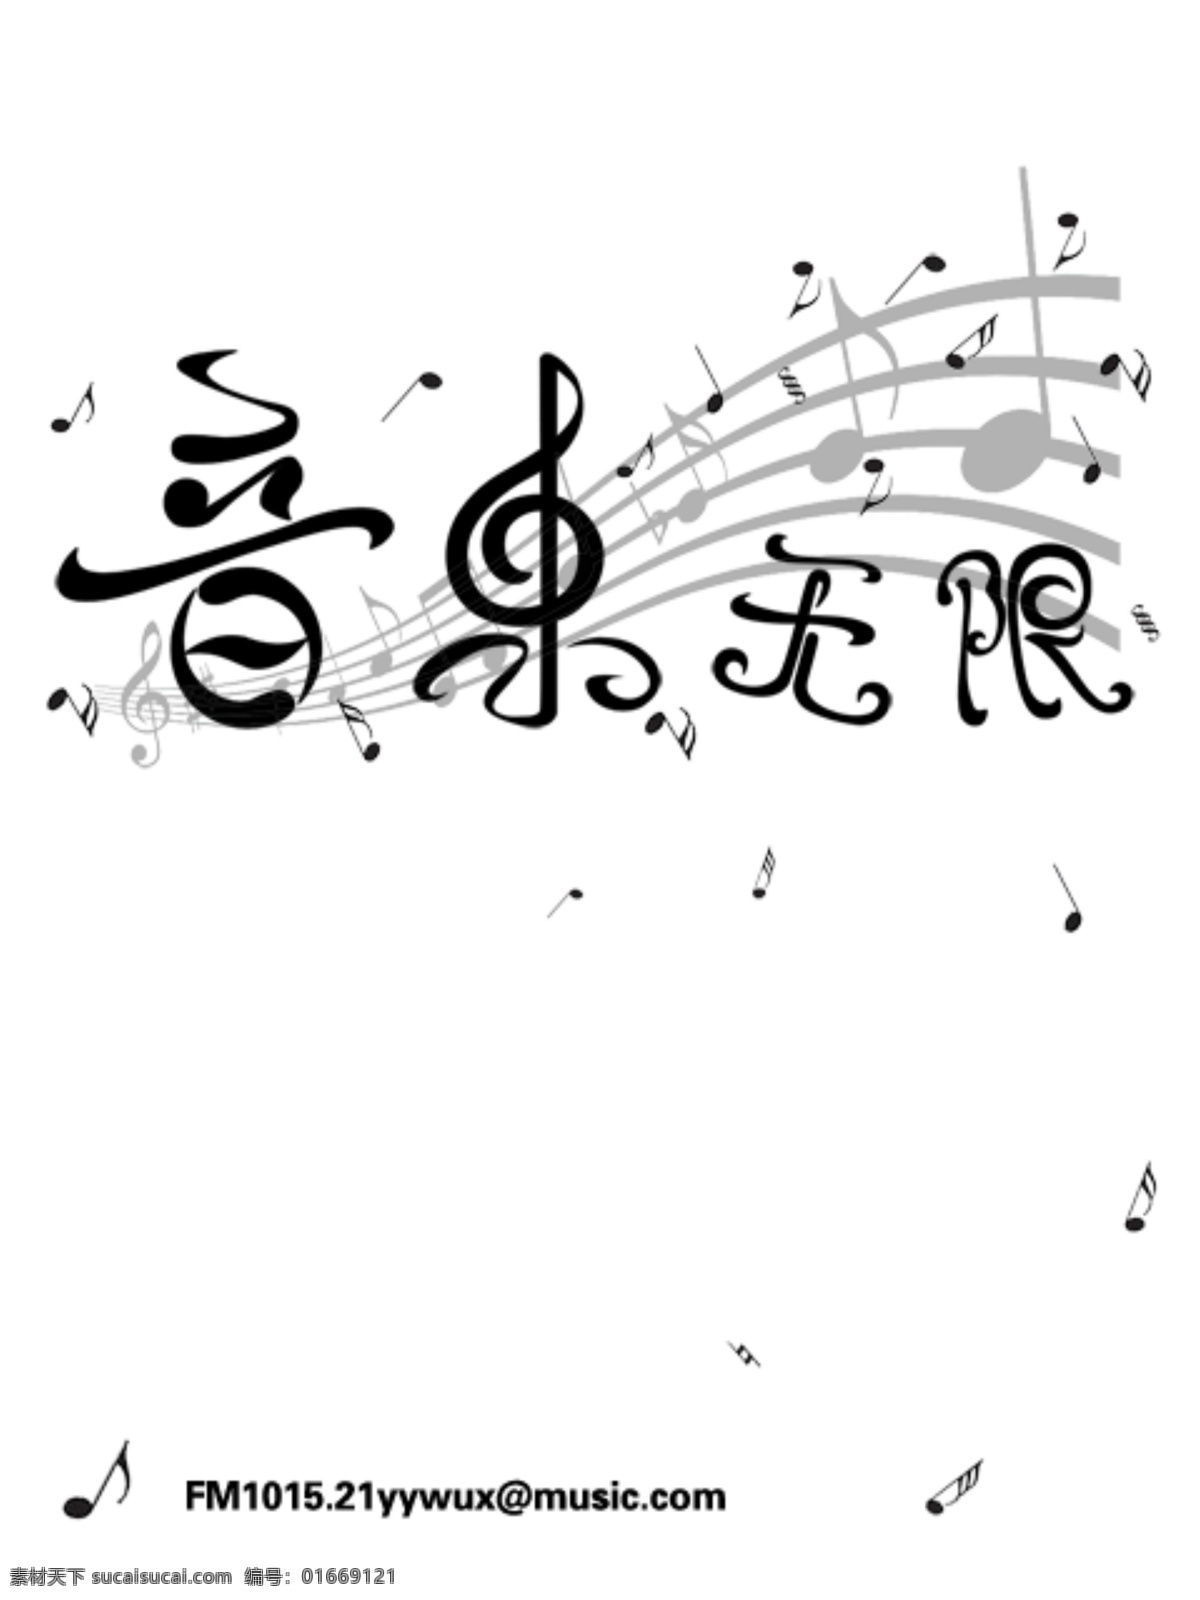 音乐无限 音乐 音符 字体 字体设计 招贴 海报 源文件库 中文字体 字体下载 源文件